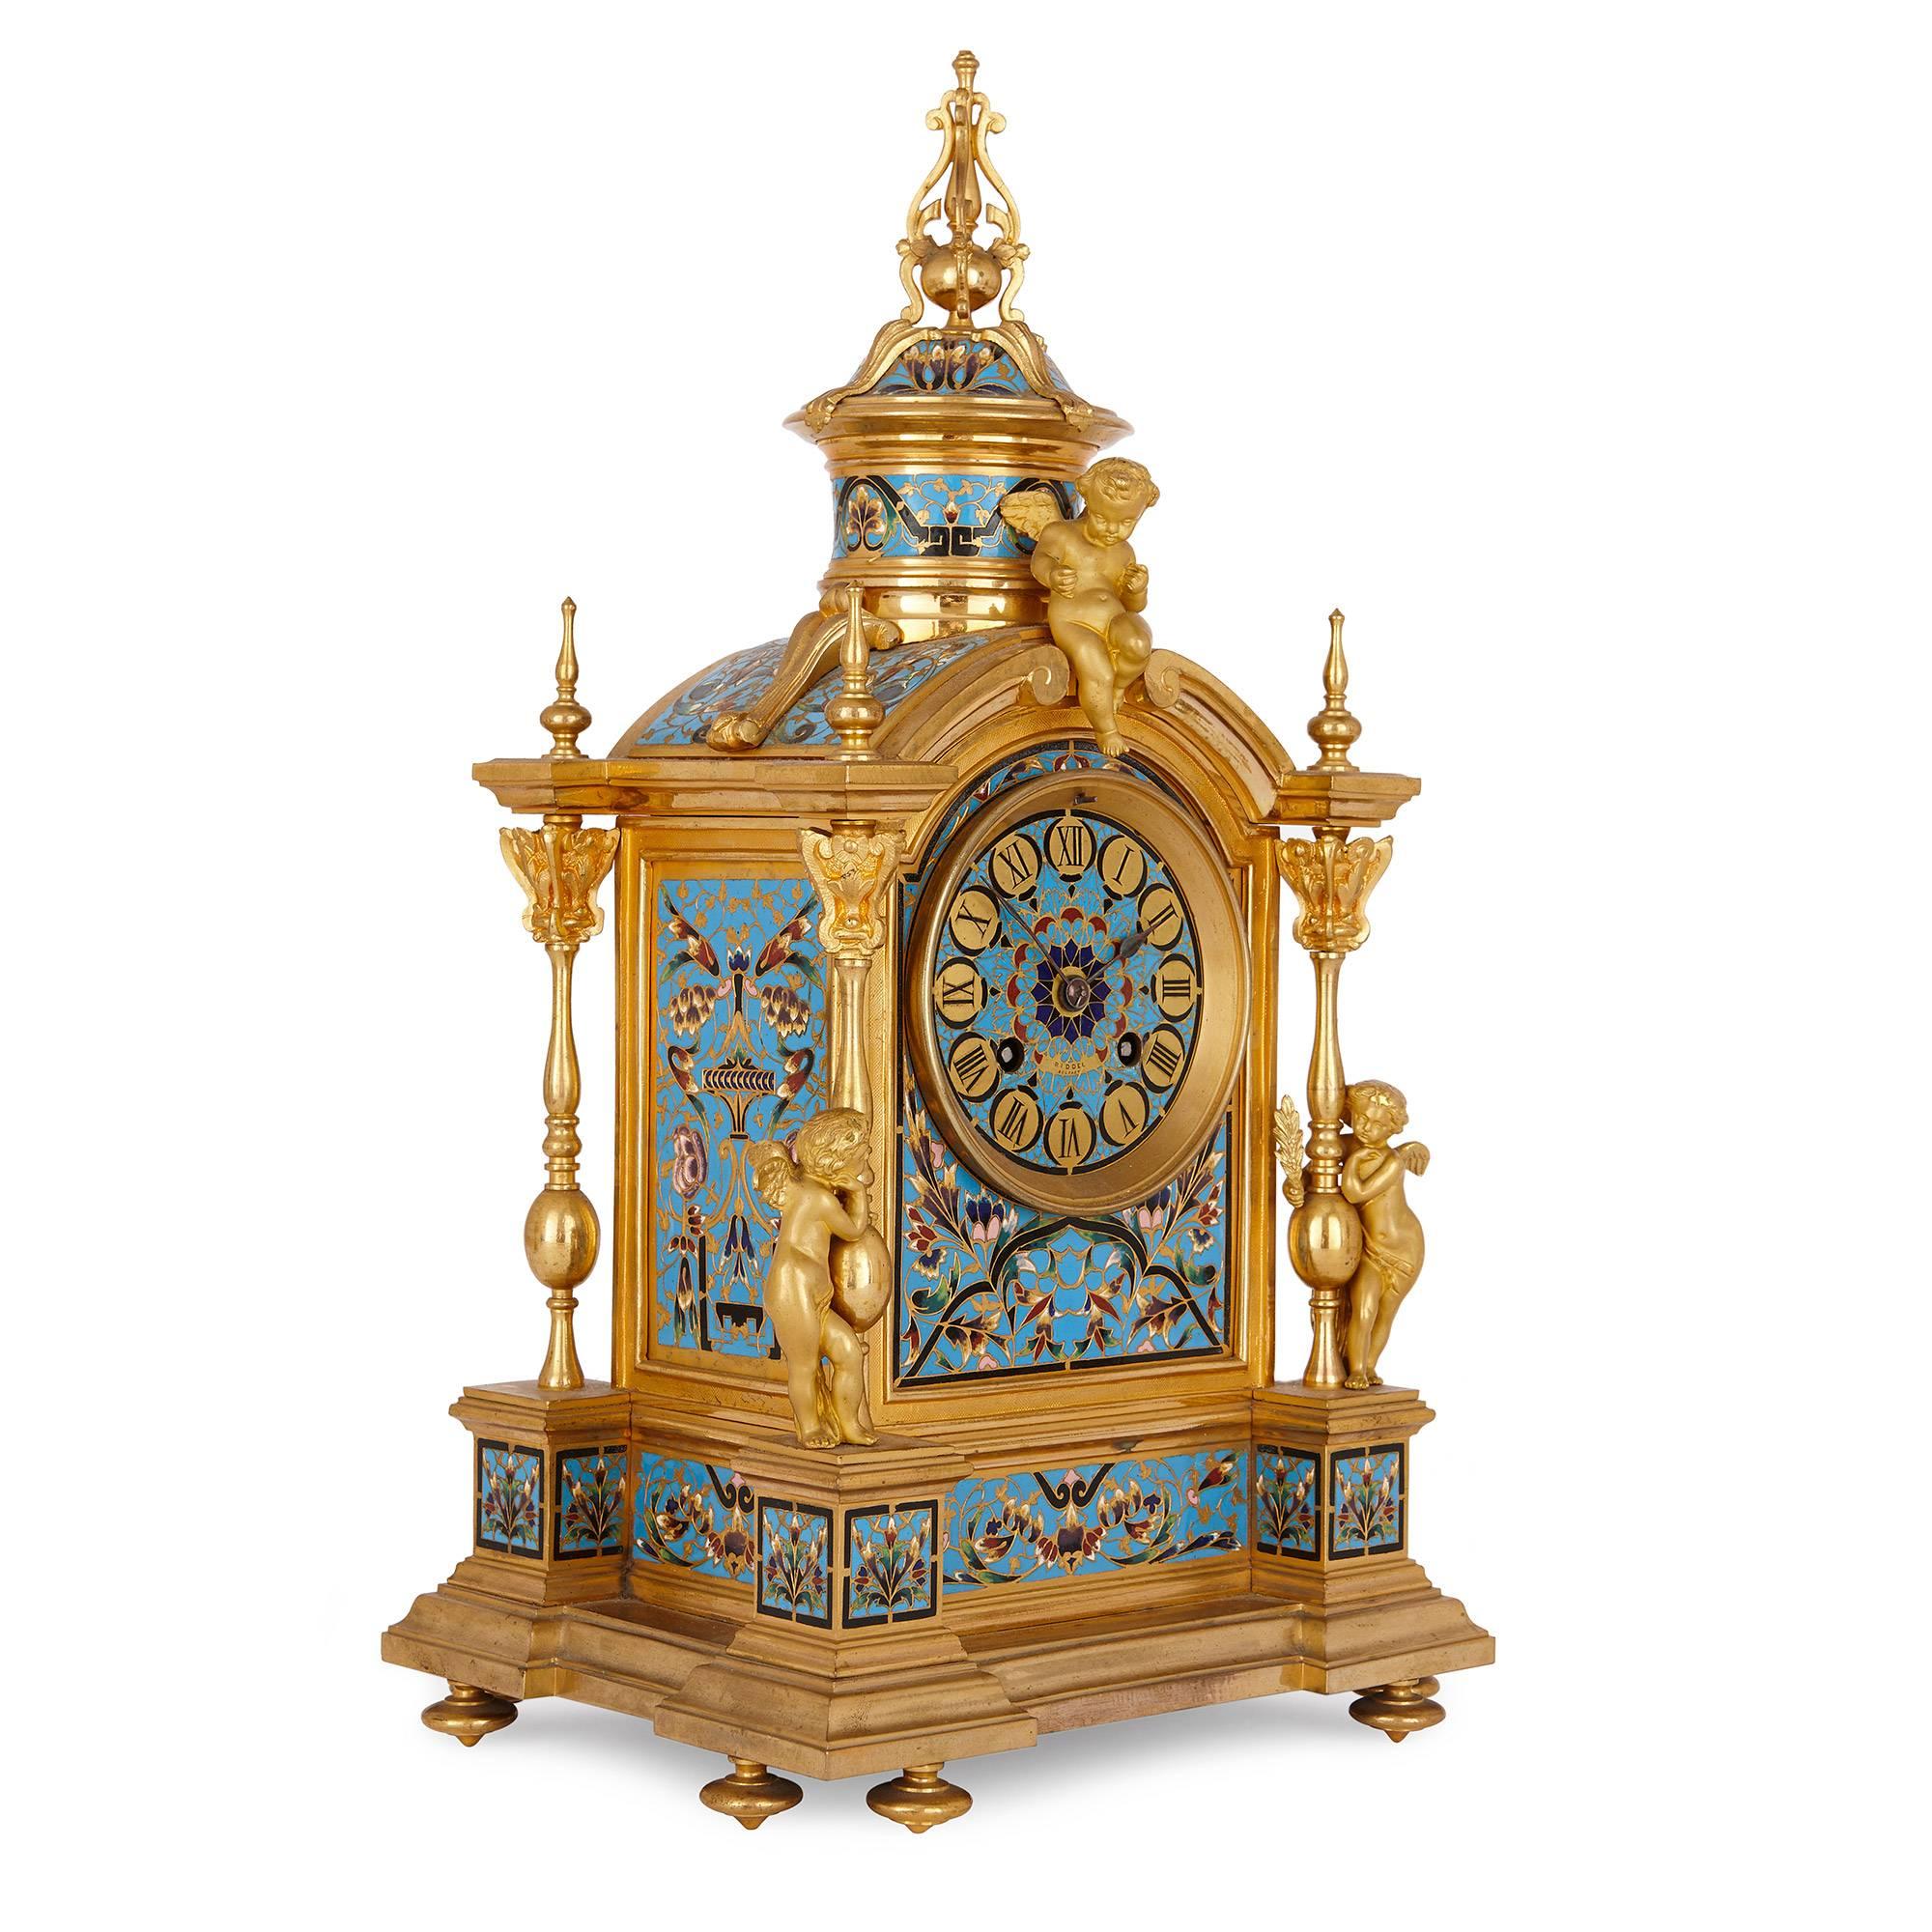 Cet ensemble exceptionnellement détaillé se compose d'une horloge de cheminée et d'une paire de vases qui l'accompagnent, tous réalisés en bronze doré et abondamment décorés d'émail cloisonné vibrant. La pendule repose sur des pieds en toupie en